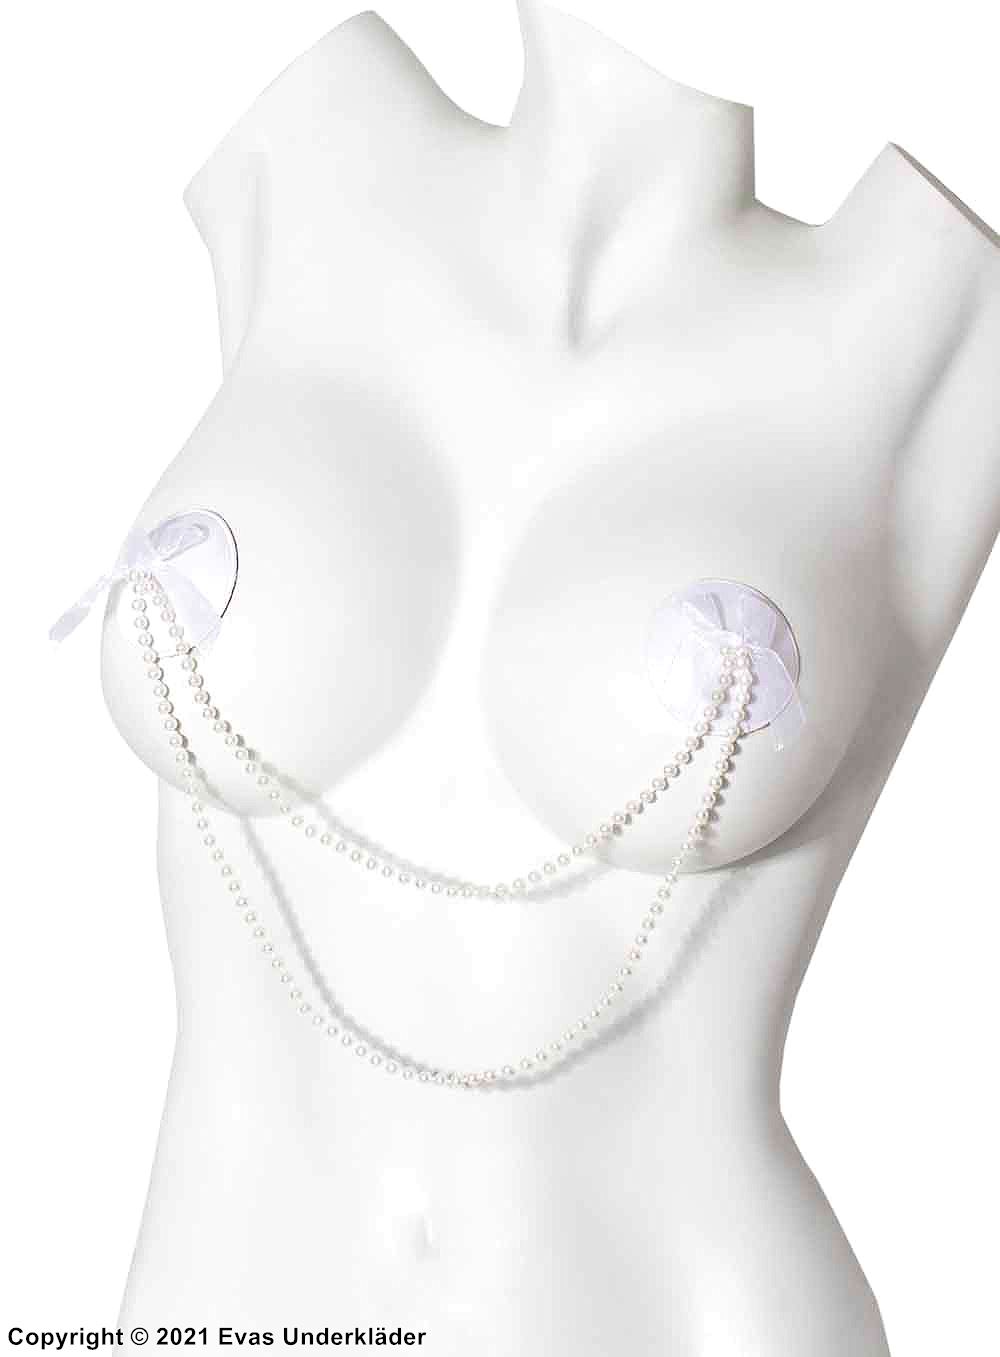 Selvklebende brystvorteskjulere, bånd, perler